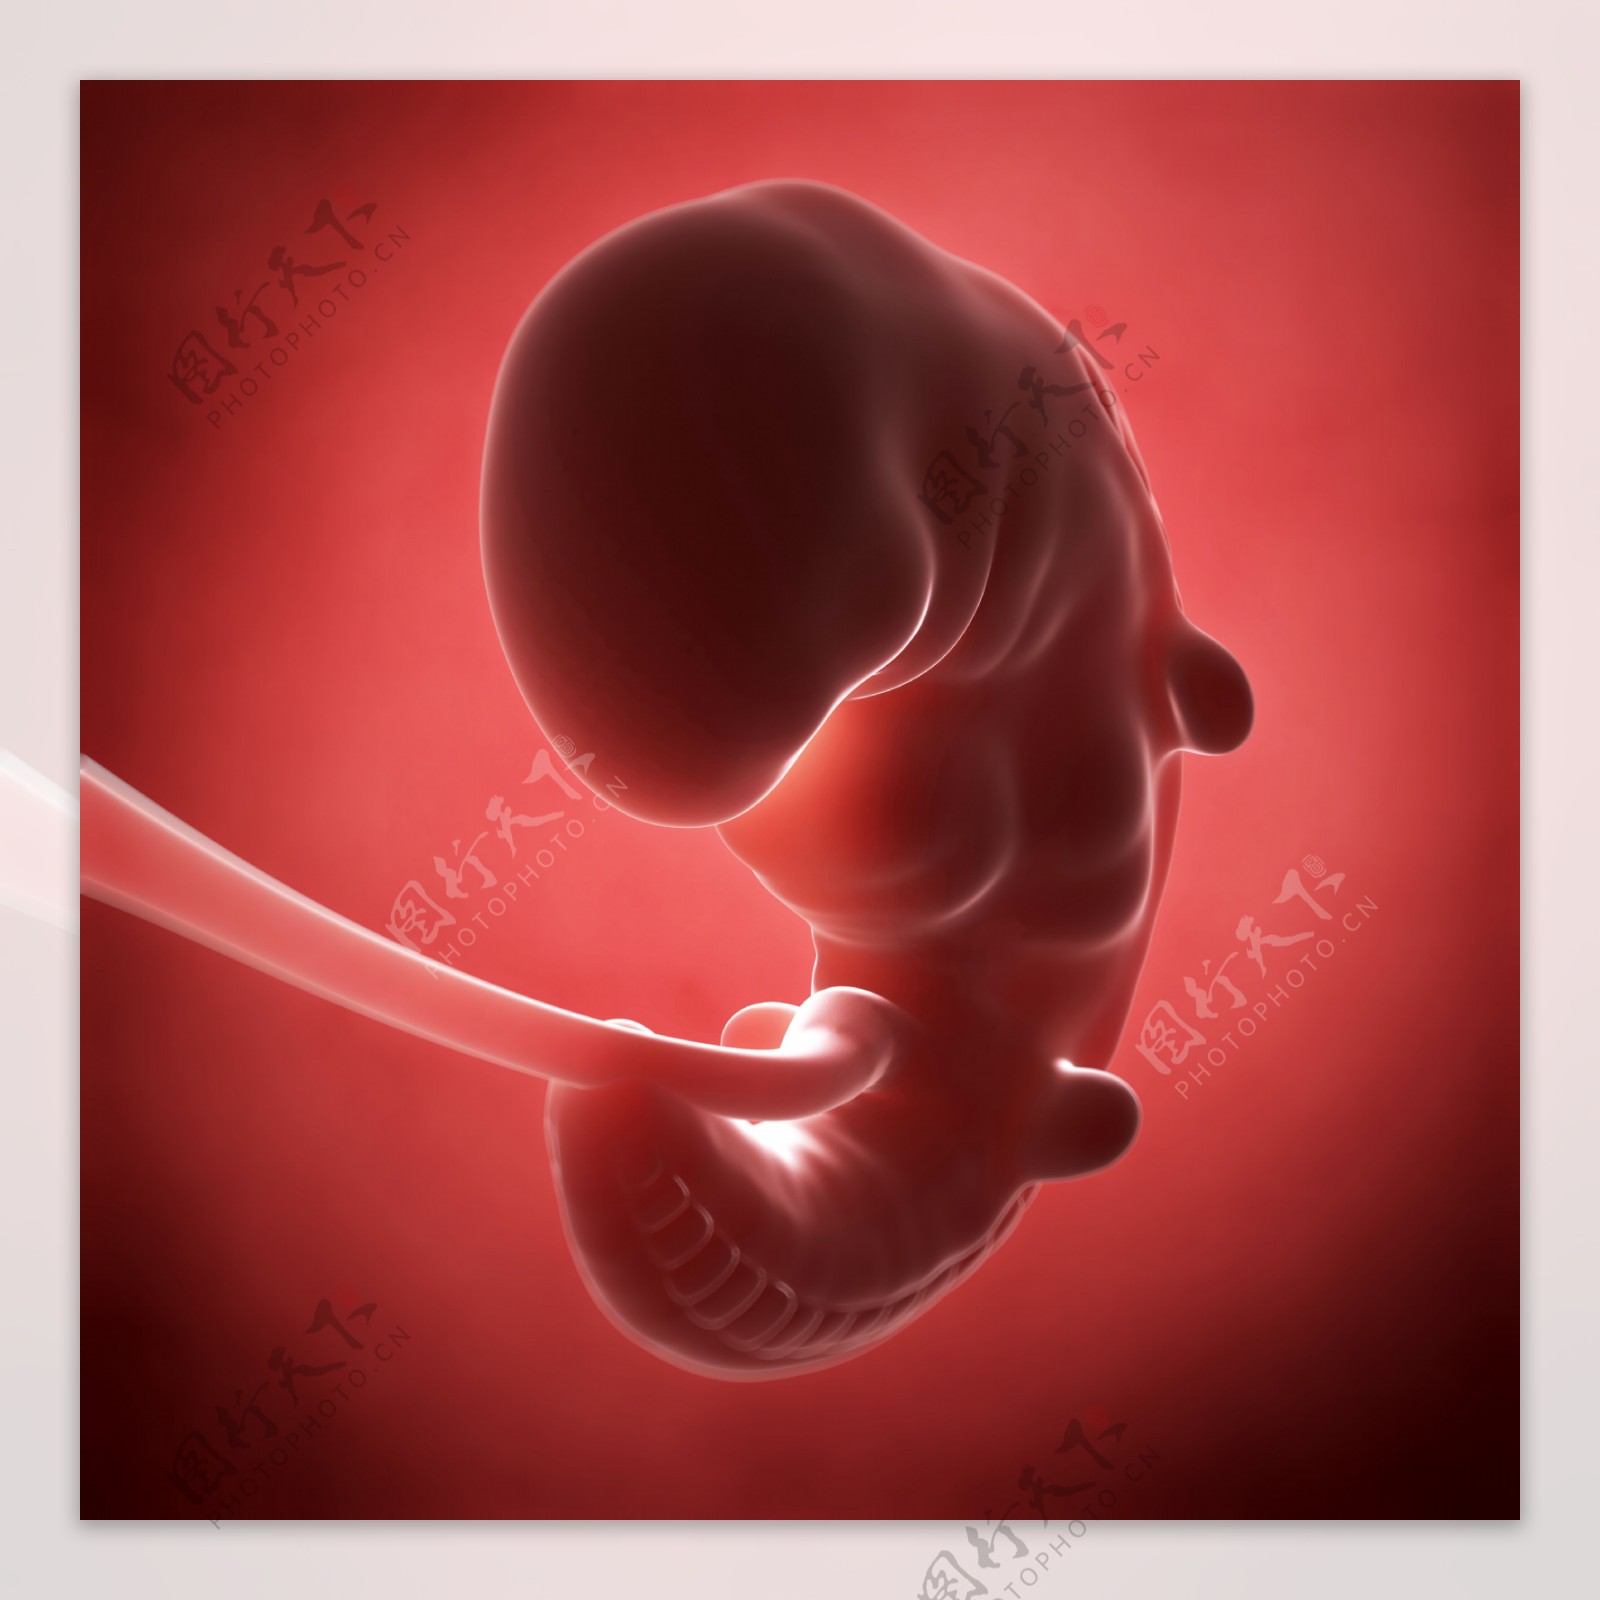 发育中的胚胎图片